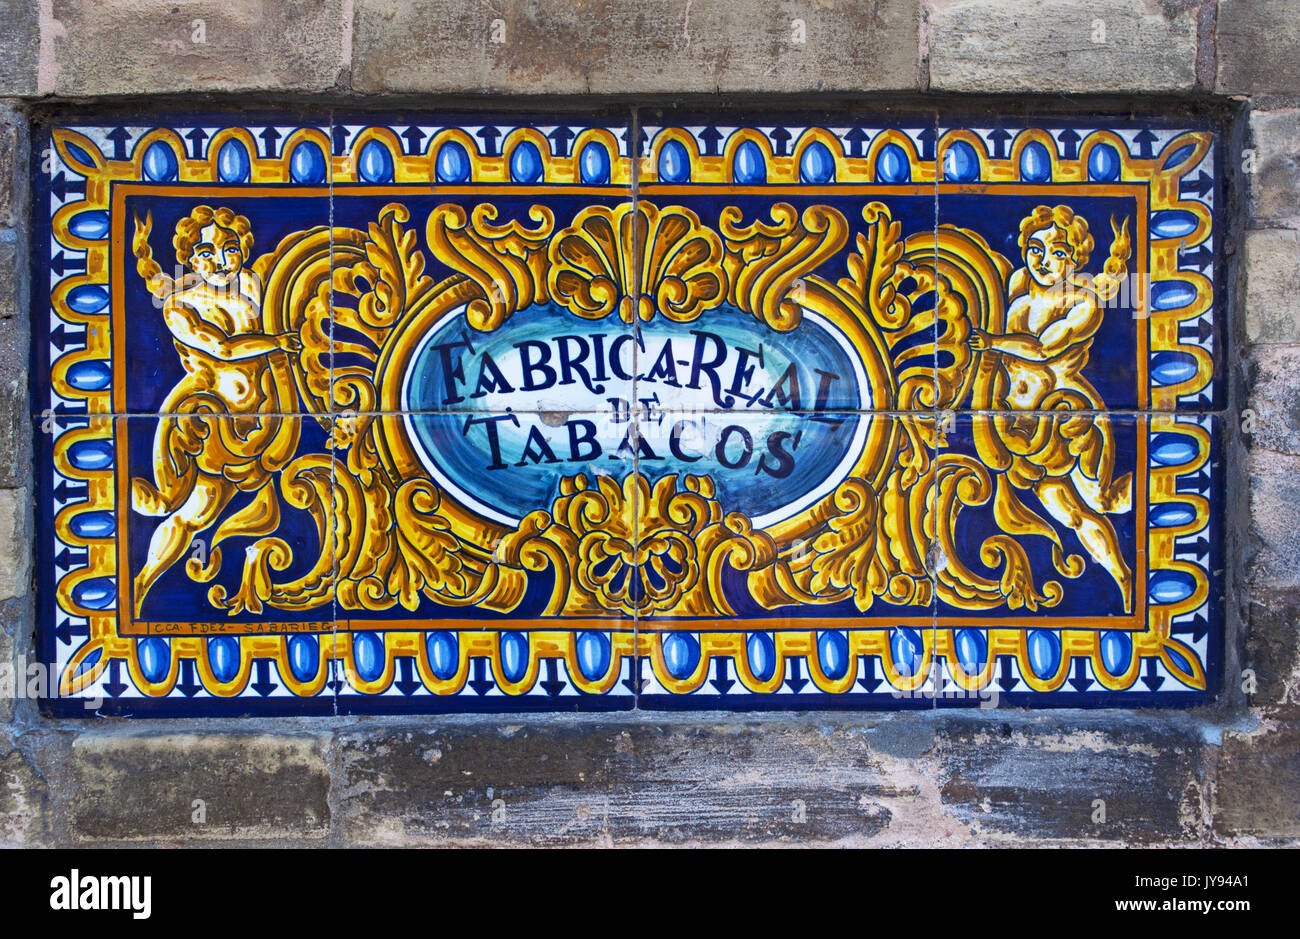 Spagna: ceramica segno della reale fabbrica di tabacco, il settecentesco edificio di pietra a Siviglia, sede del Rettorato dell'Università fin dagli anni cinquanta Foto Stock